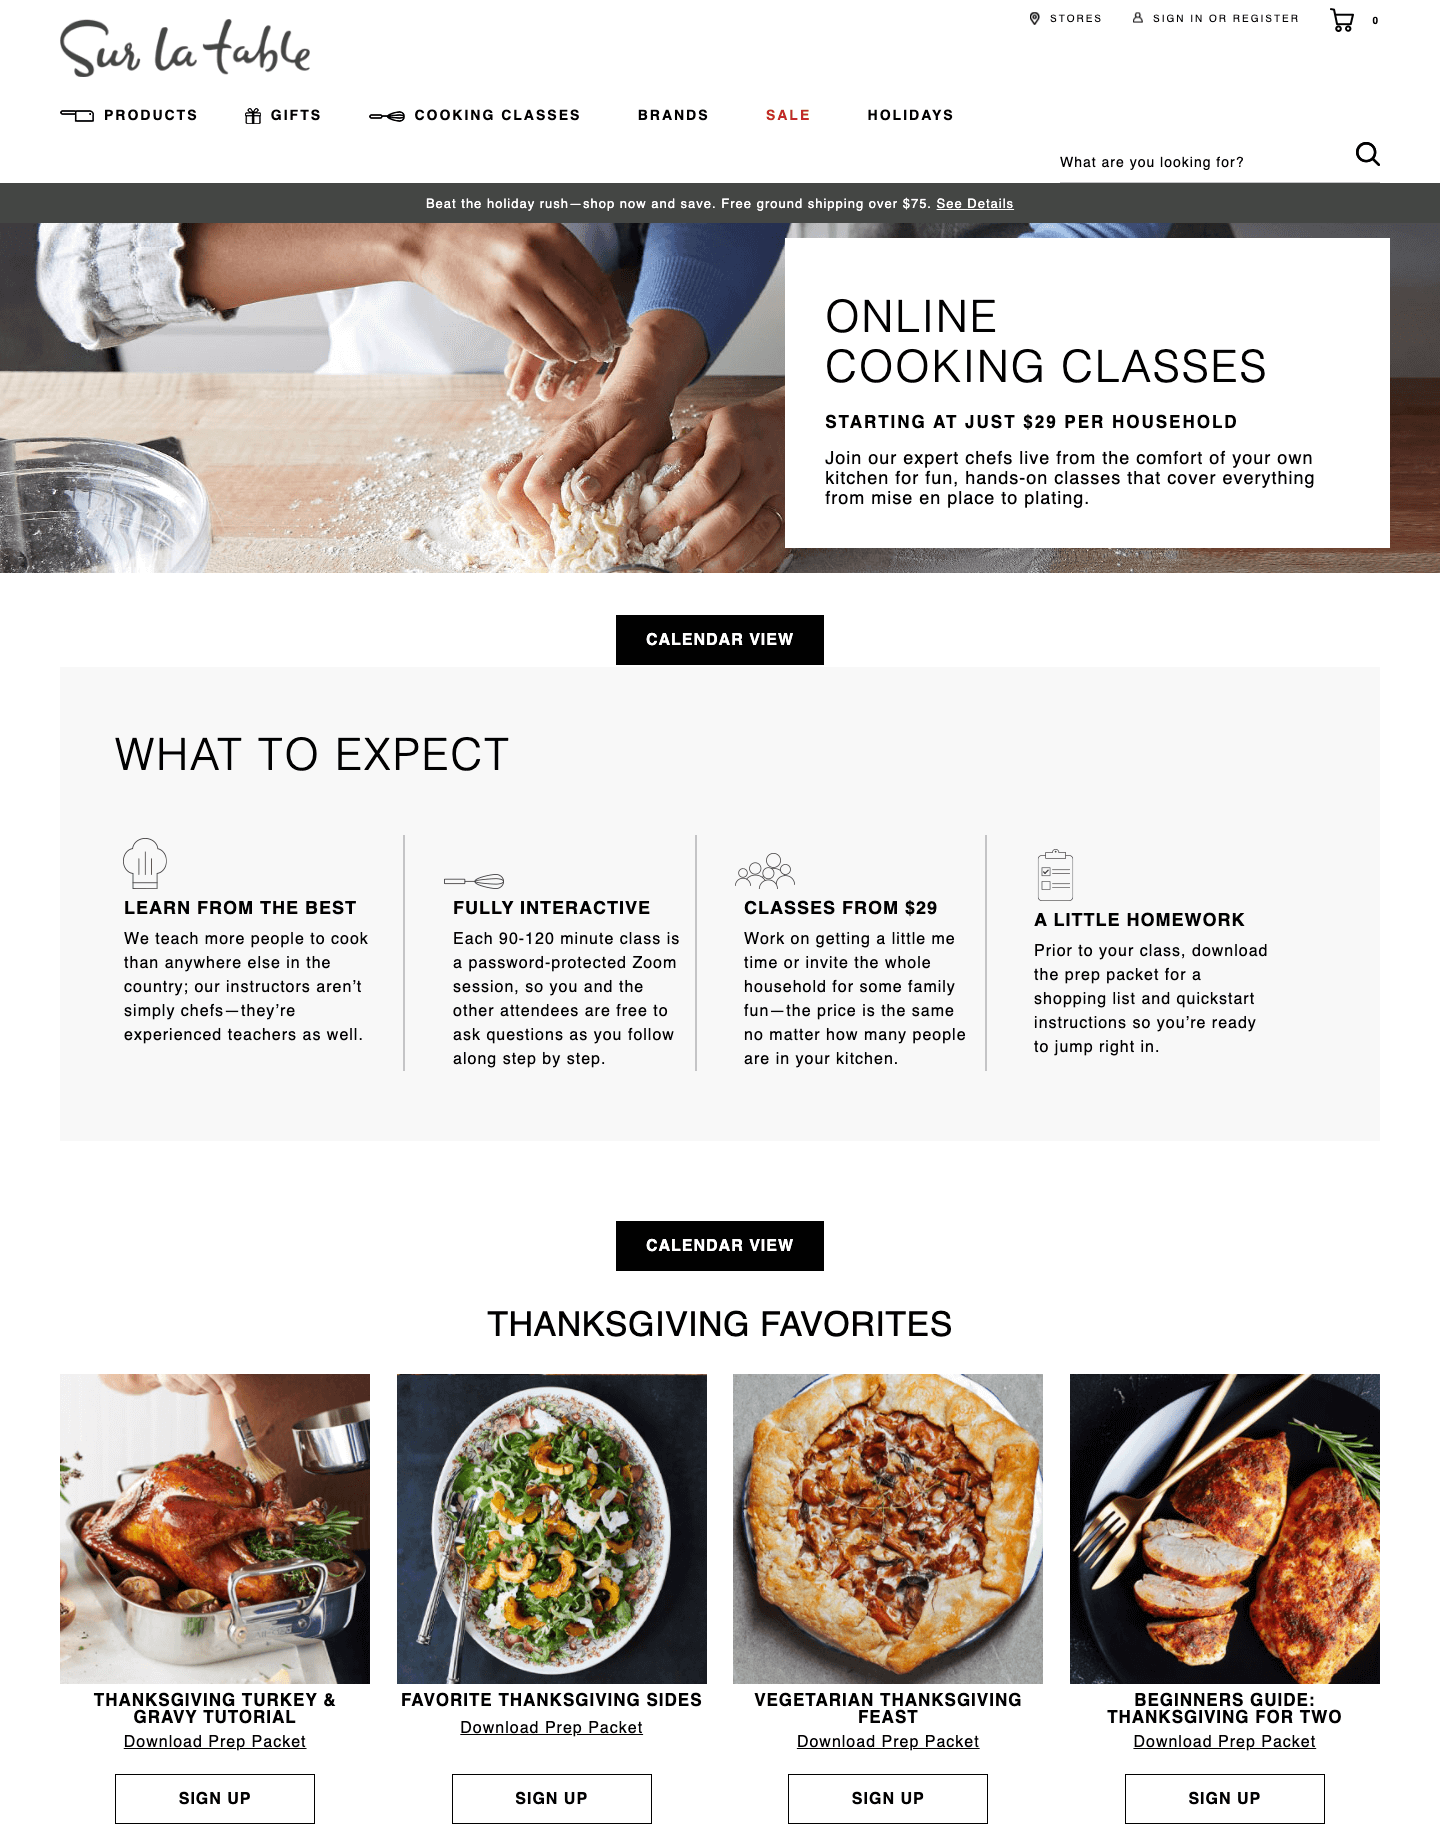 Sur La Table's online cooking classes landing page